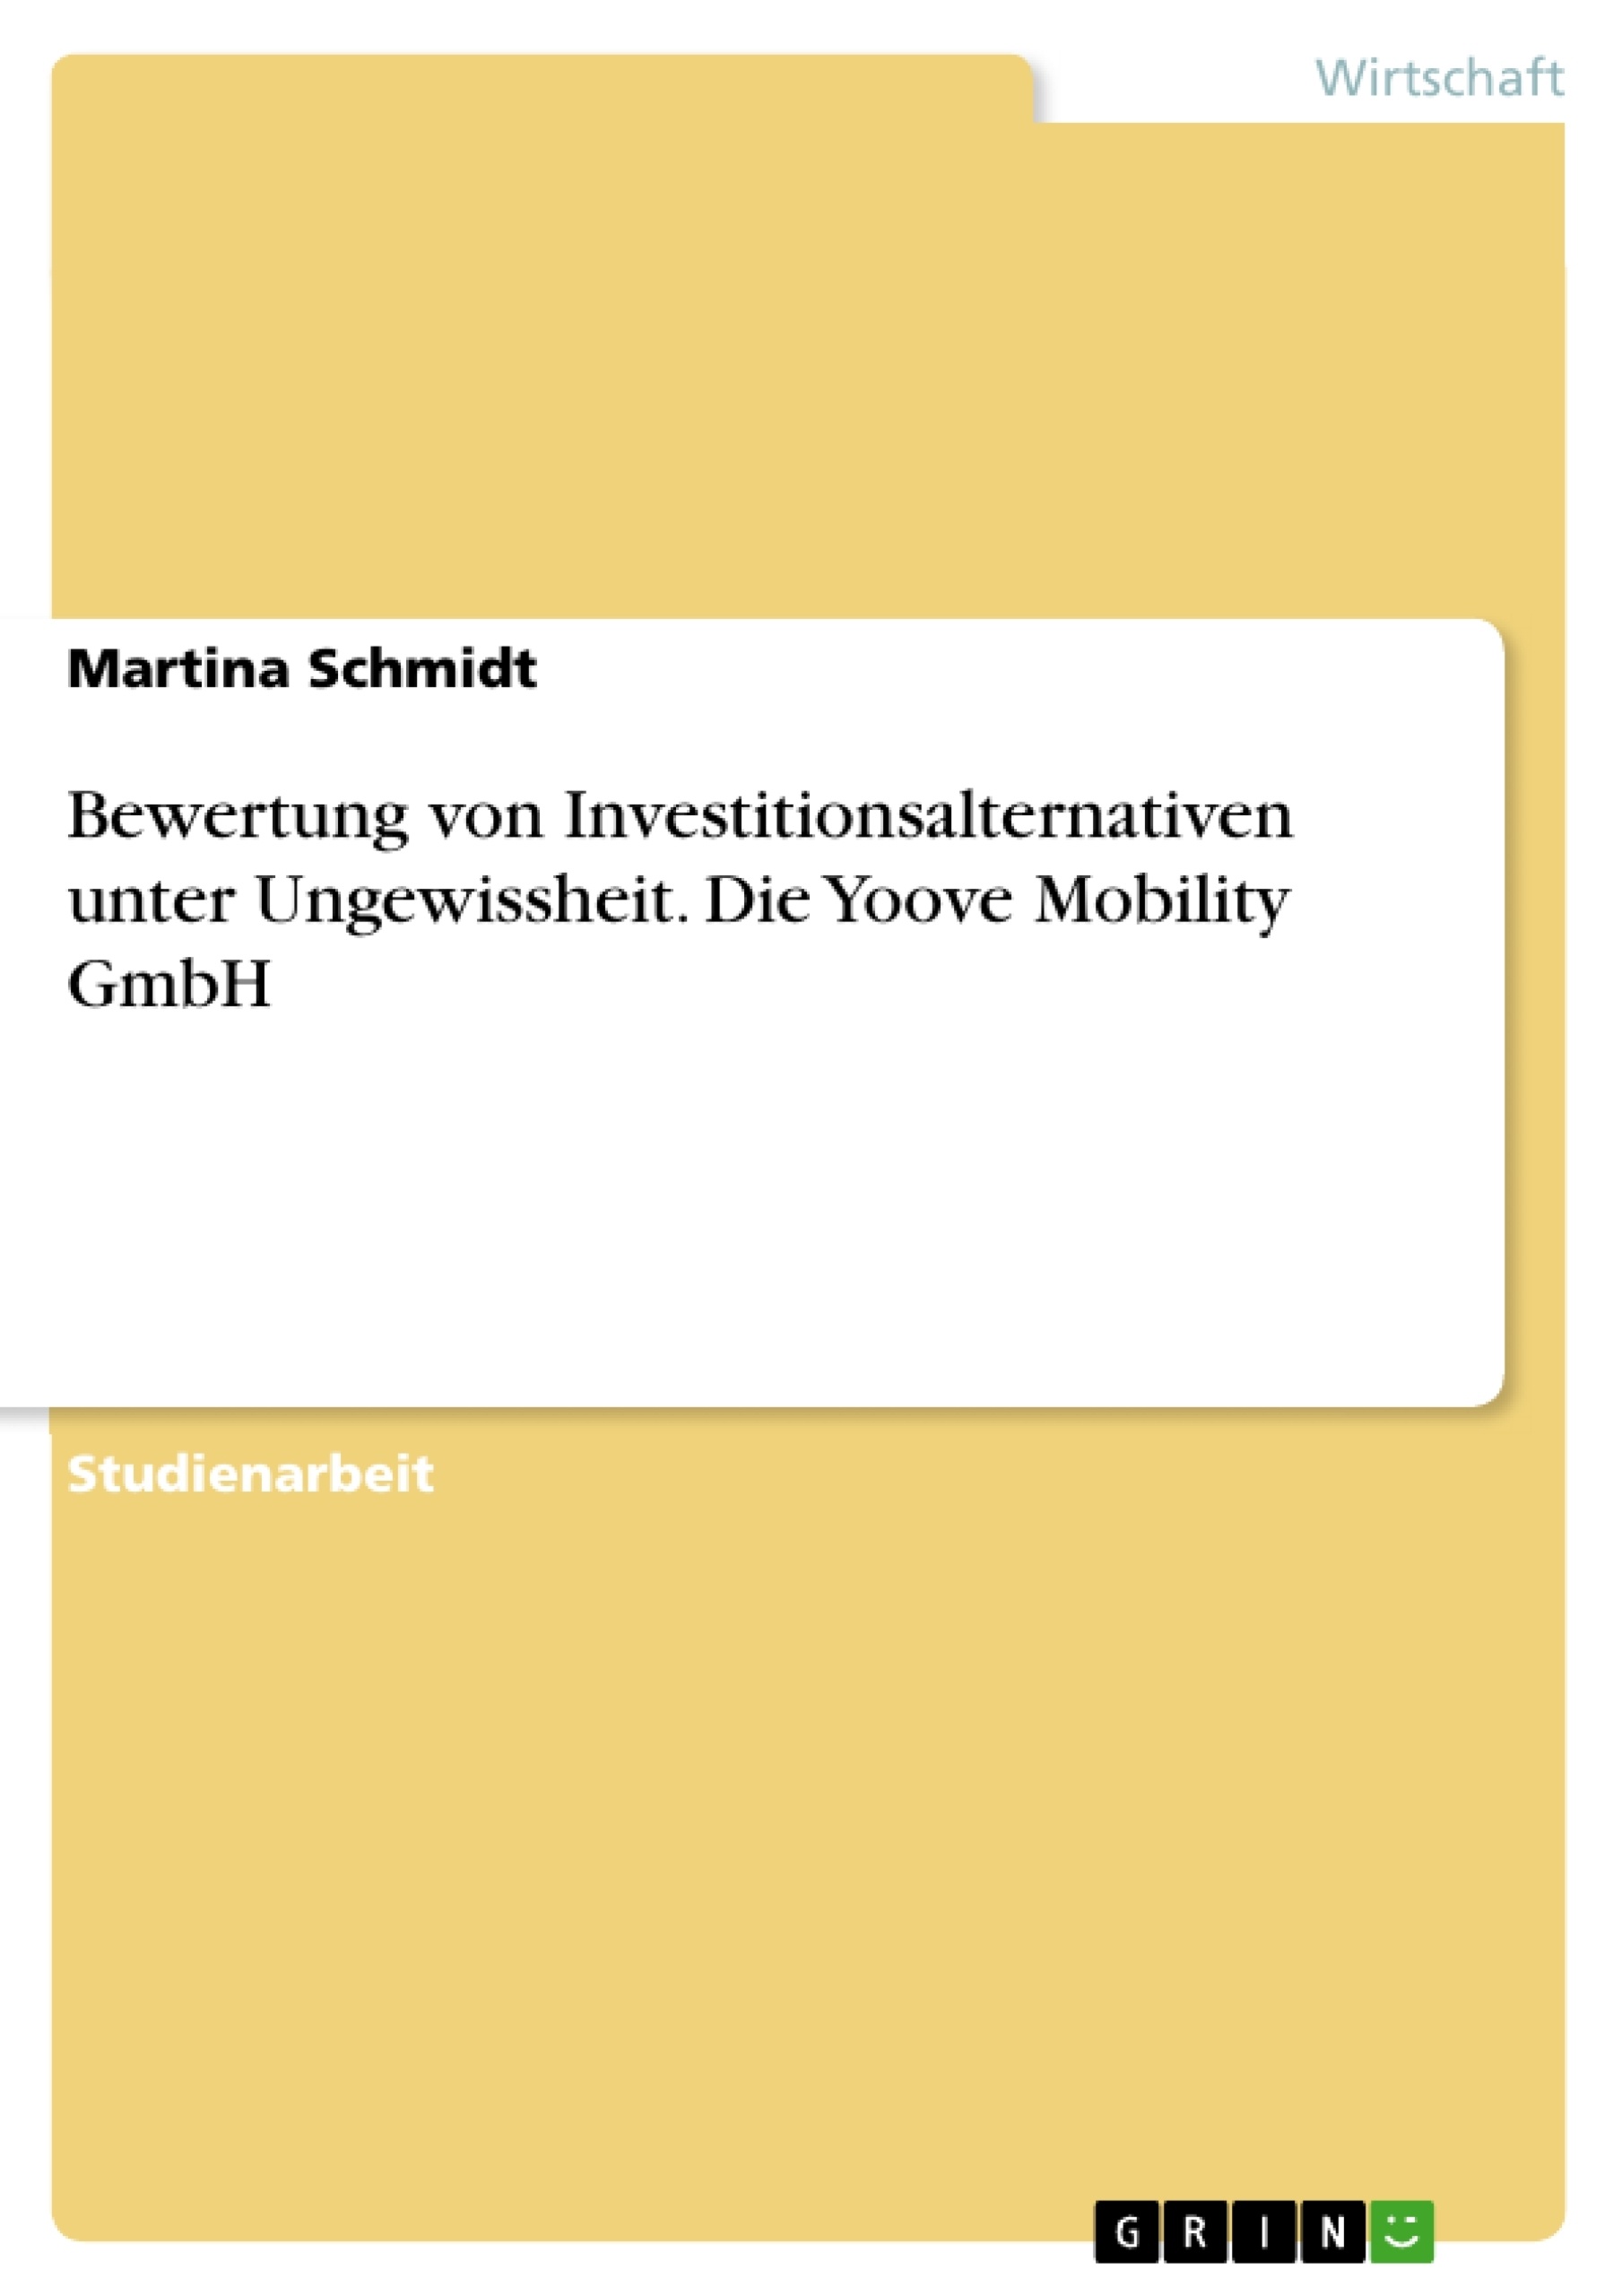 Título: Bewertung von Investitionsalternativen unter Ungewissheit. Die Yoove Mobility GmbH